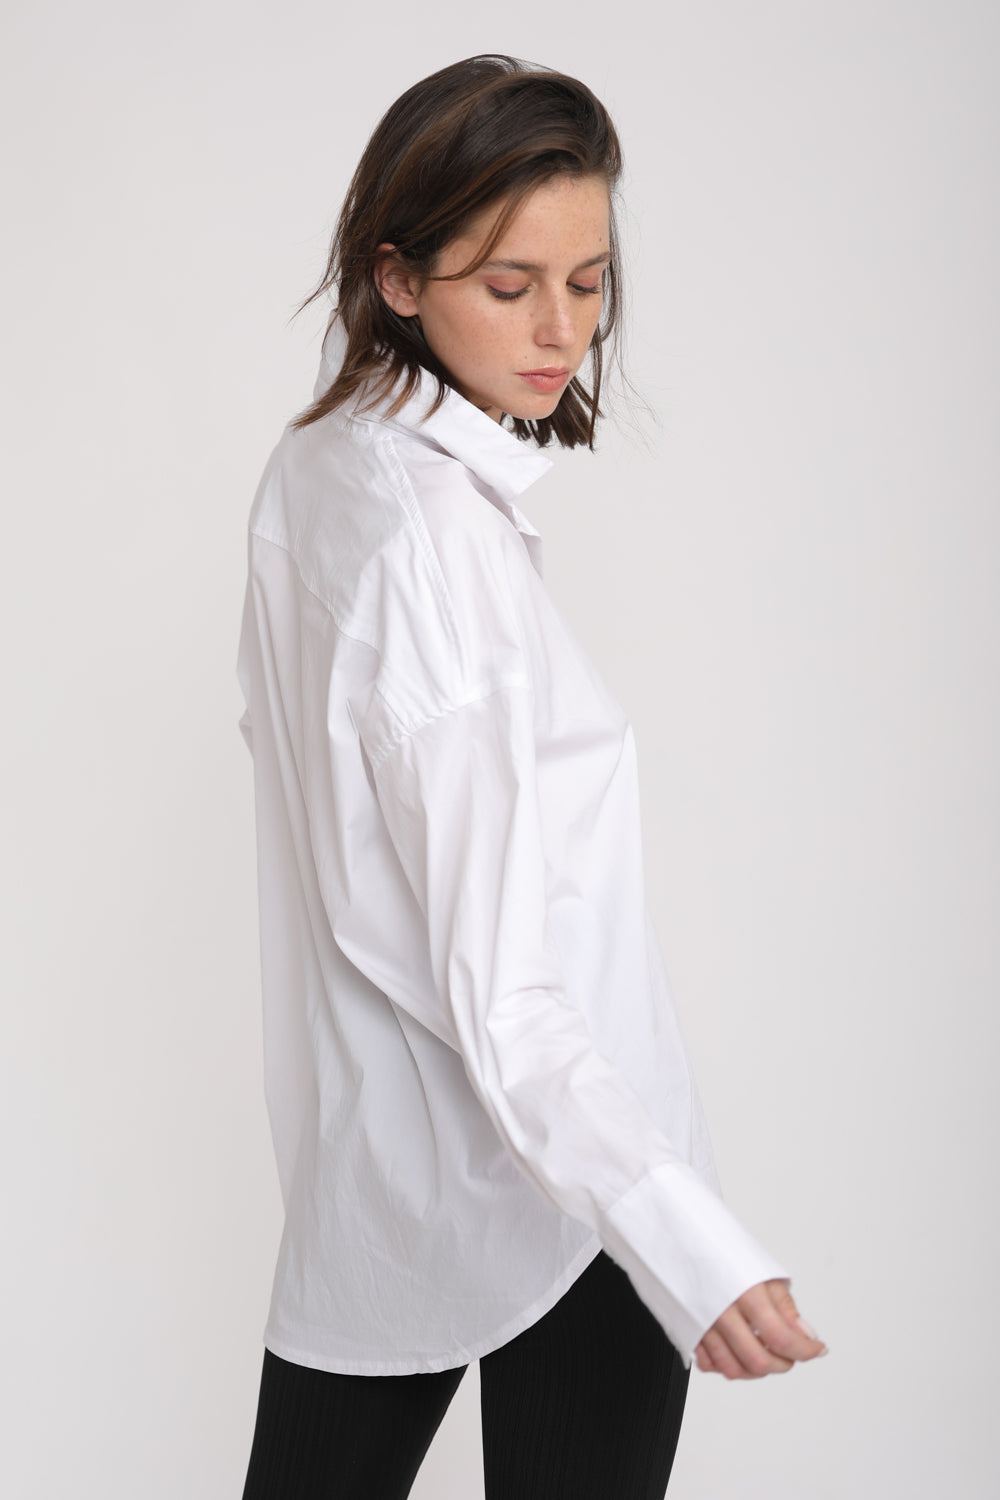 חולצה לבנה מכופתרת לנשים דגם True White Buttoned Shirt צד